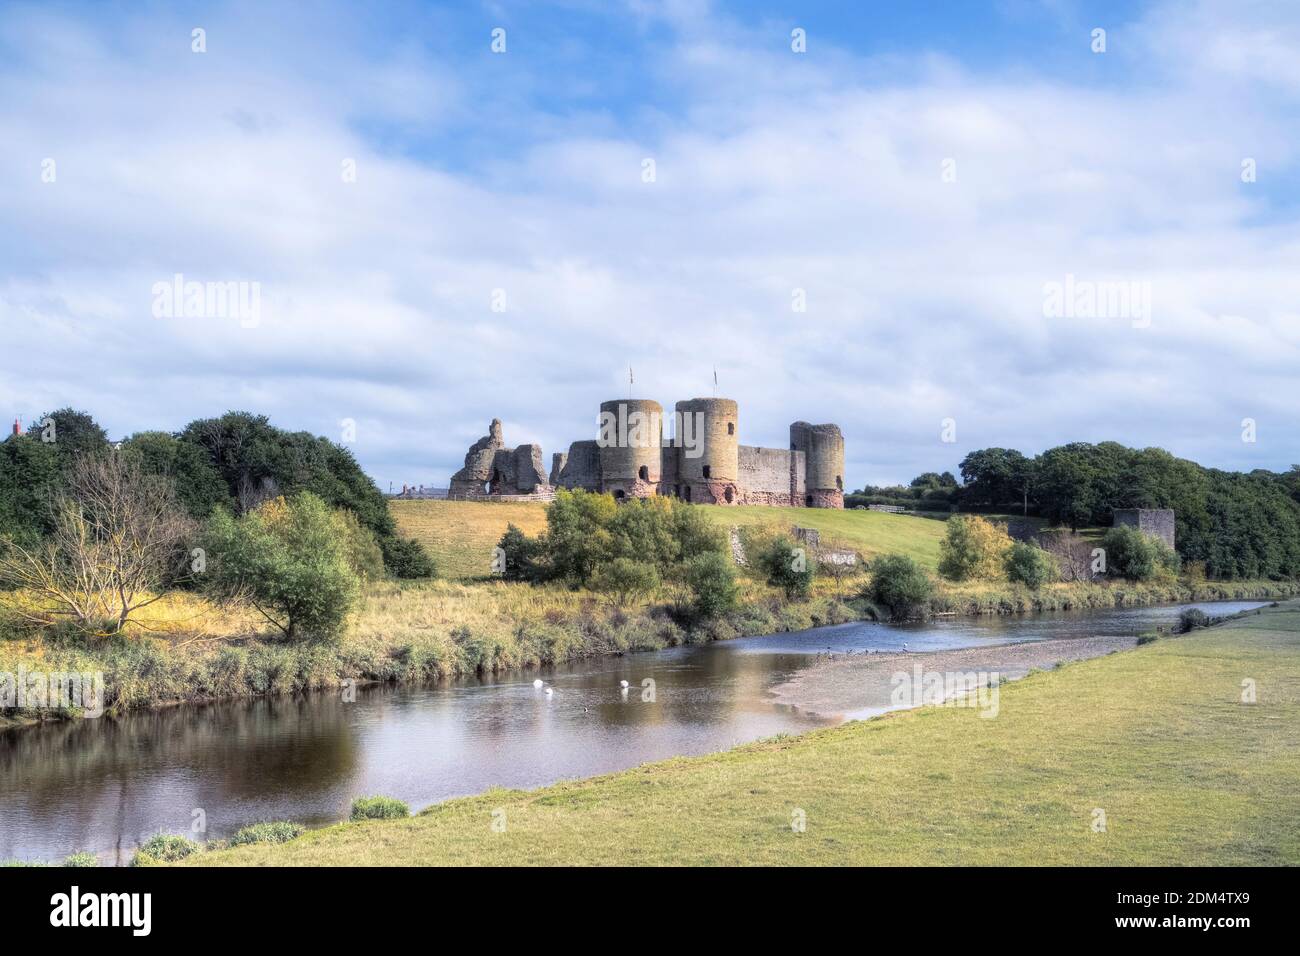 El castillo de Rhuddlan, Denbighshire, Wales, Reino Unido Foto de stock